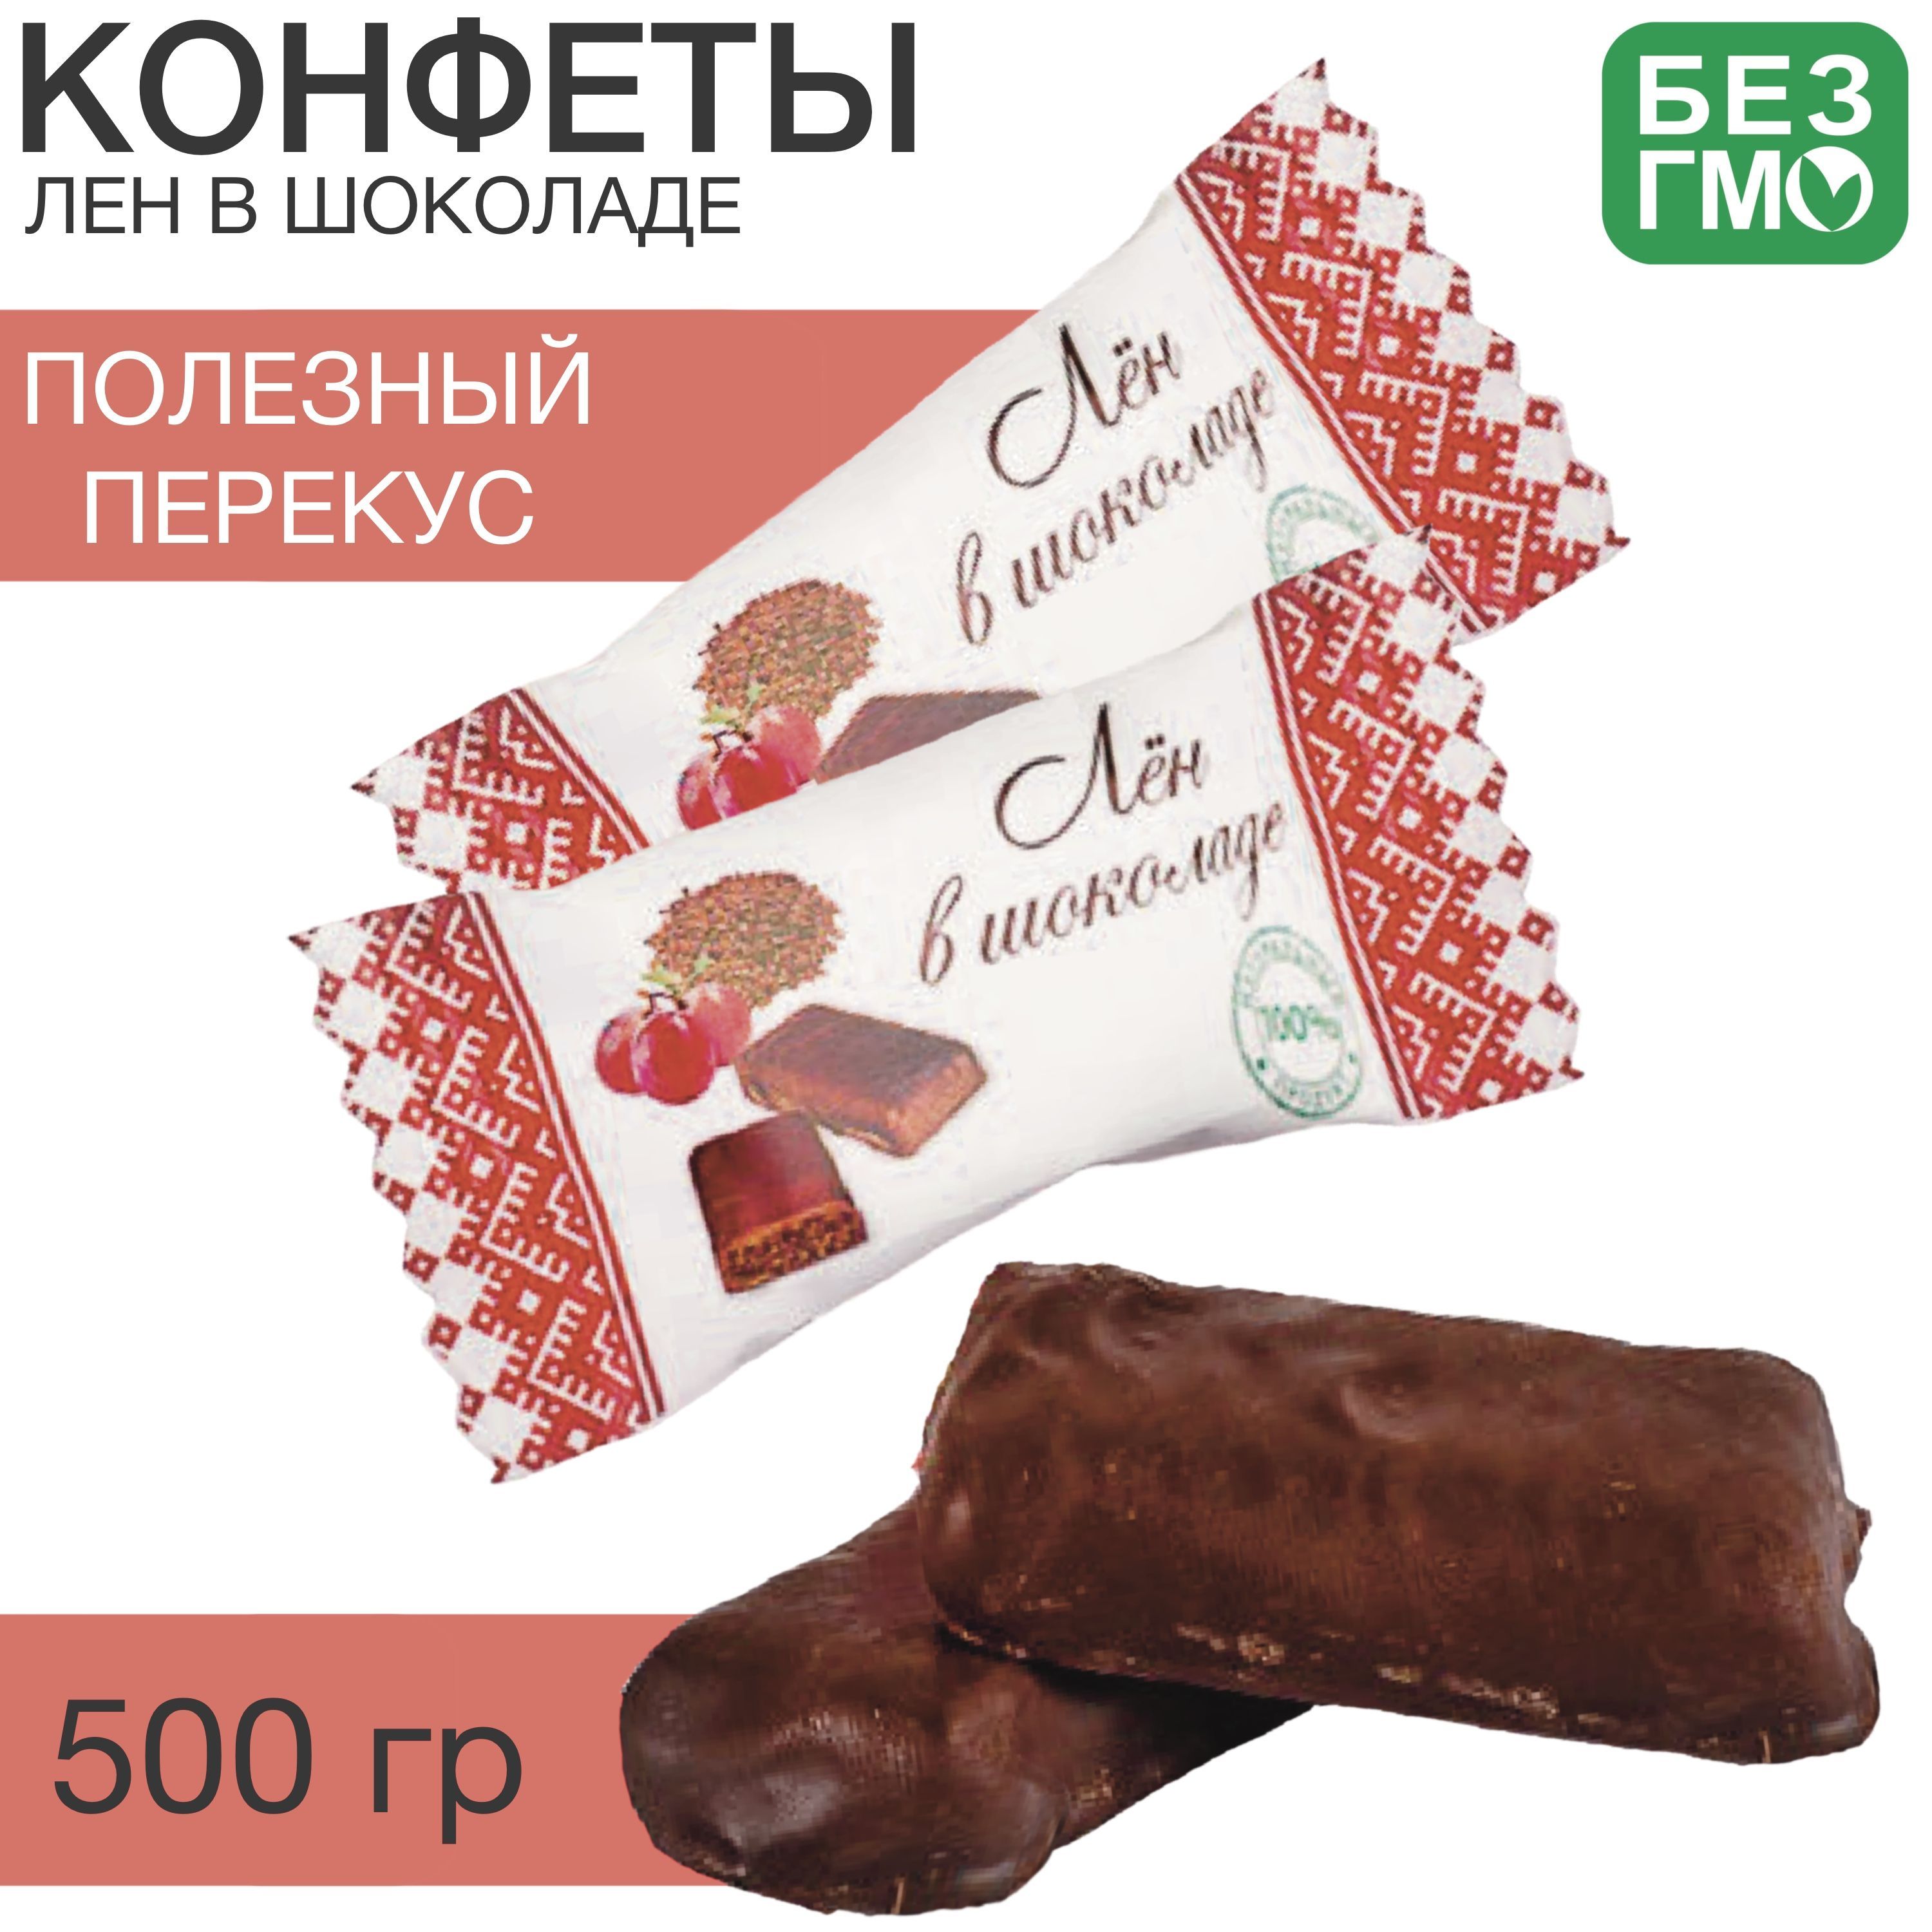 Купить или заказать Добавить надпись на клубнику в шоколаде в Москве на сайте биржевые-записки.рф